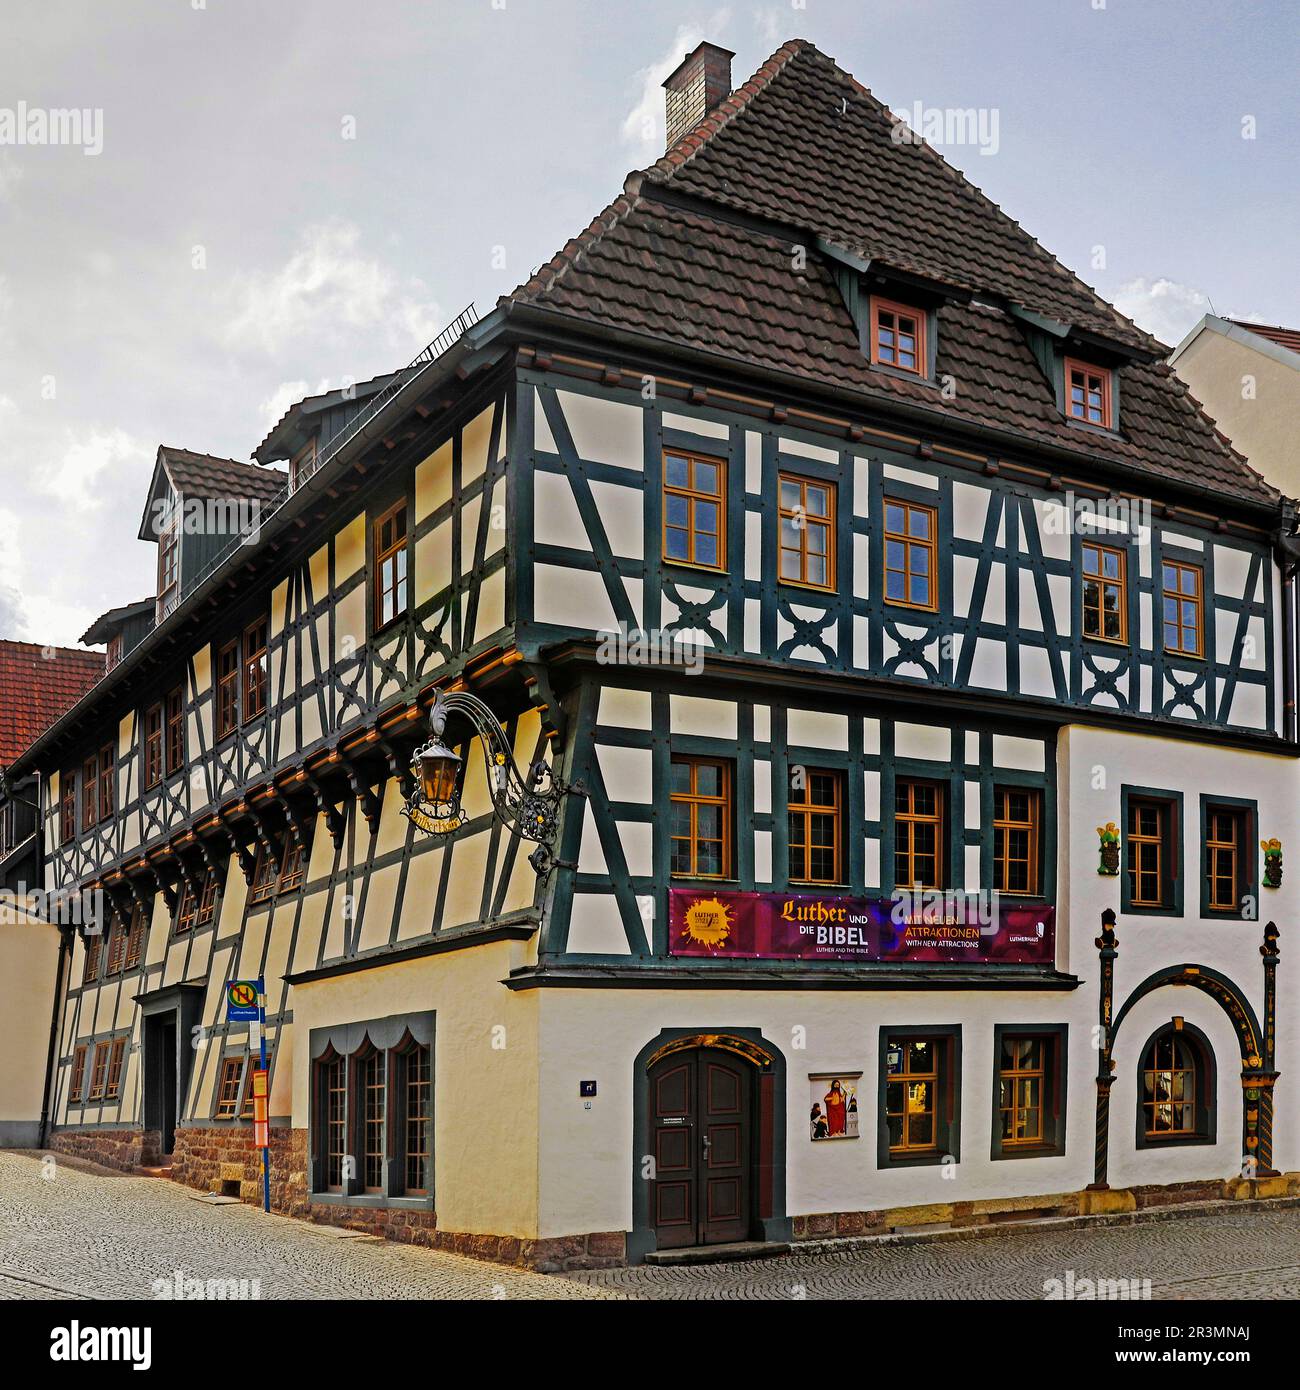 Lutherhaus in der historischen Altstadt, Europaeisches Kulturerbe, Eisenach, Thueringen, Deutschland, Europa Stock Photo